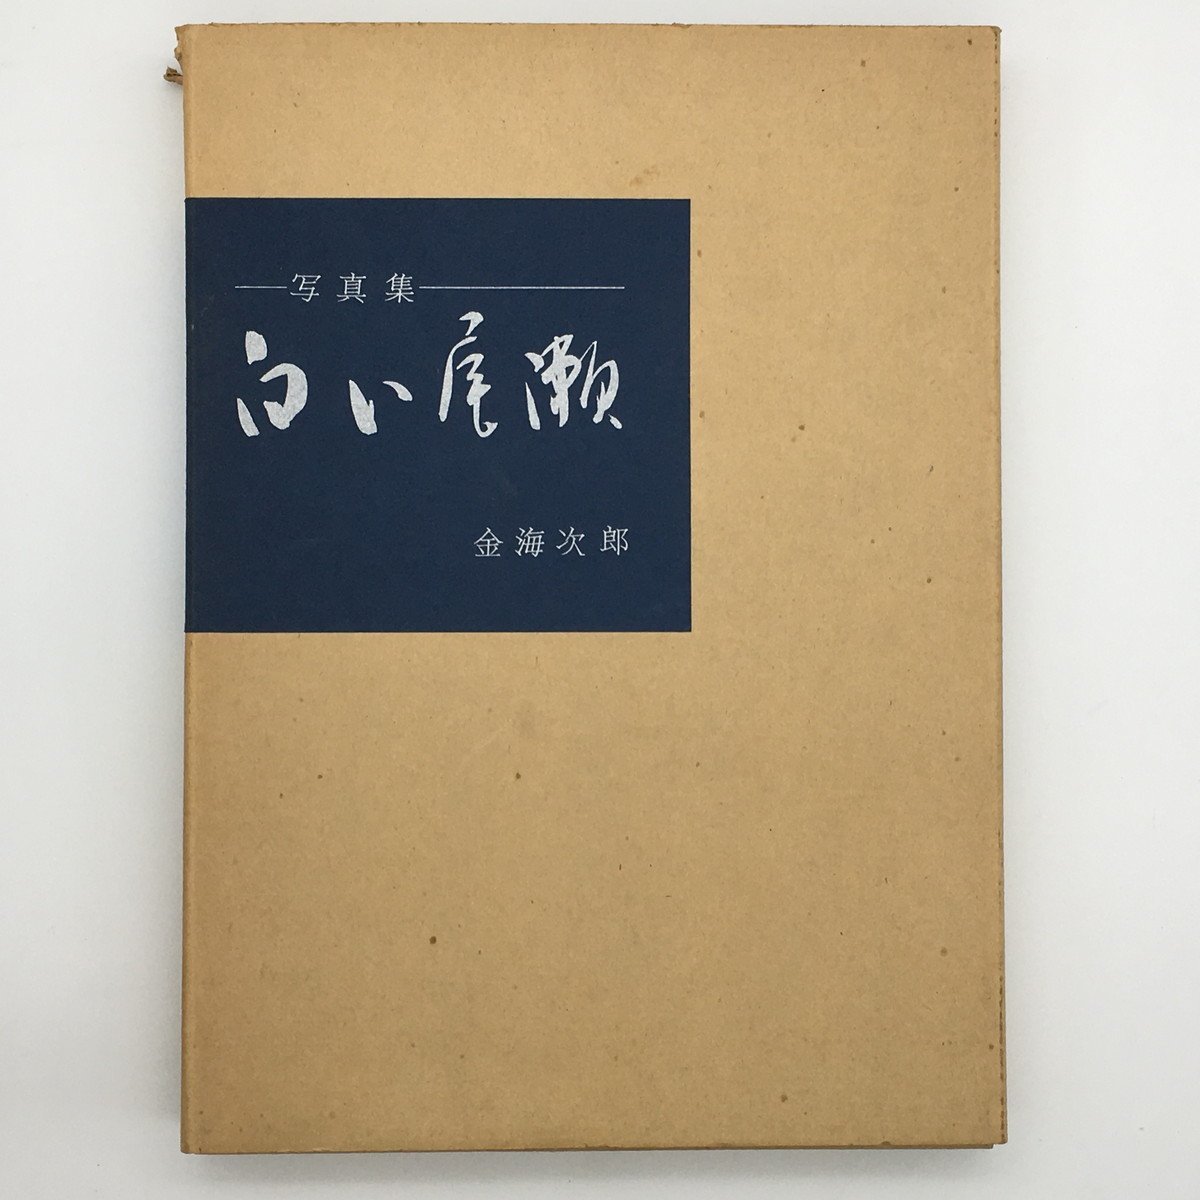 مجموعة الصور: White Oze مع 6 مطبوعات أصلية, وقعه جيرو كانومي, يقتصر على 100 نسخة, طبعة خاصة, فن, ترفيه, إلبوم الصور, طبيعة, منظر جمالي